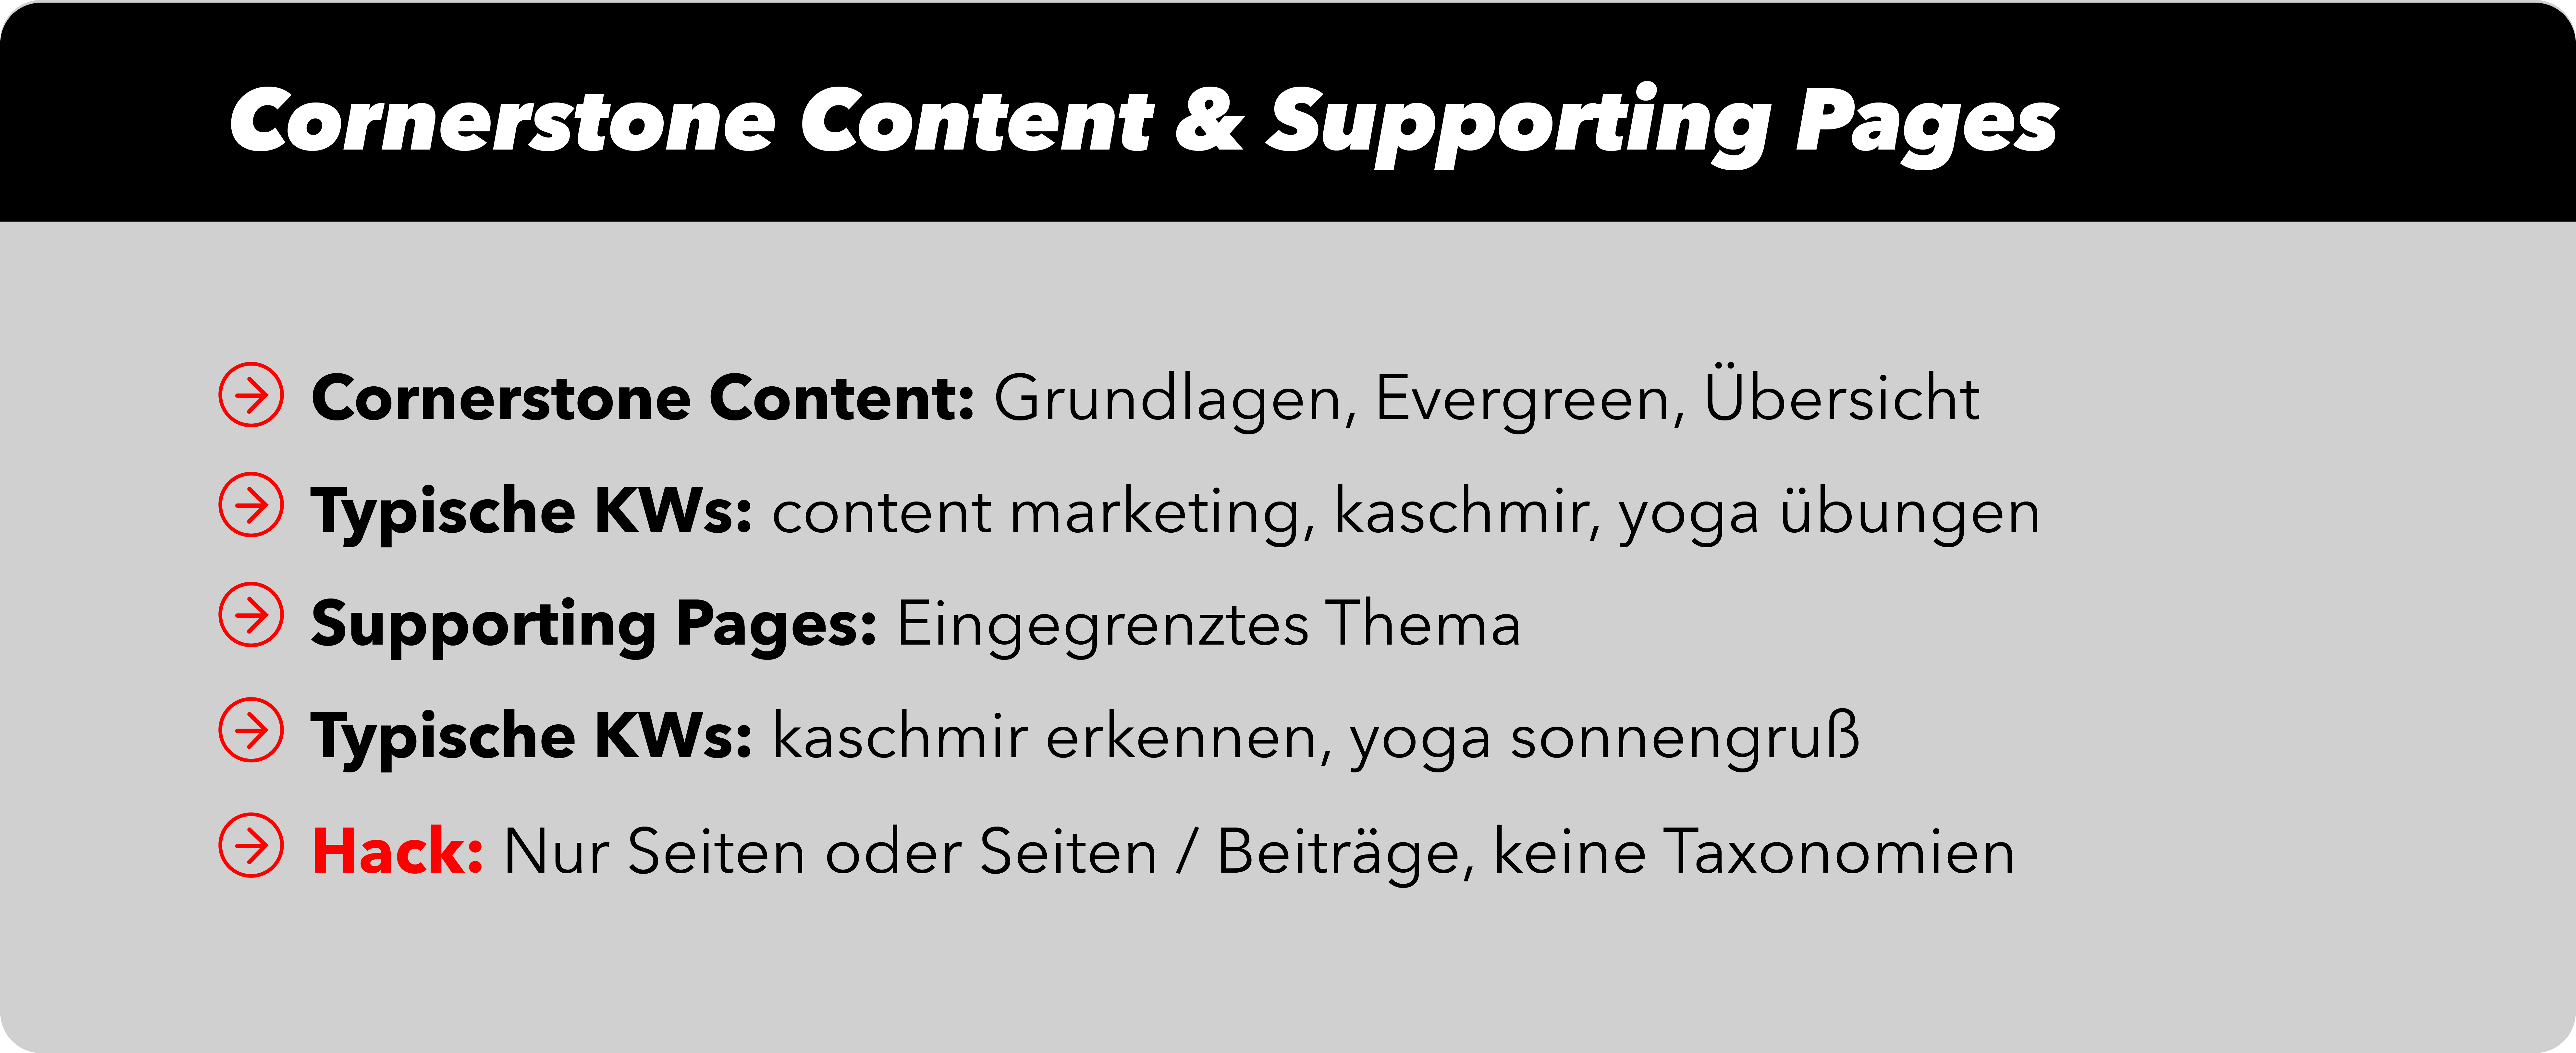 Wordpress SEO: Struktur von Cornerstone Content und Supporting Pages